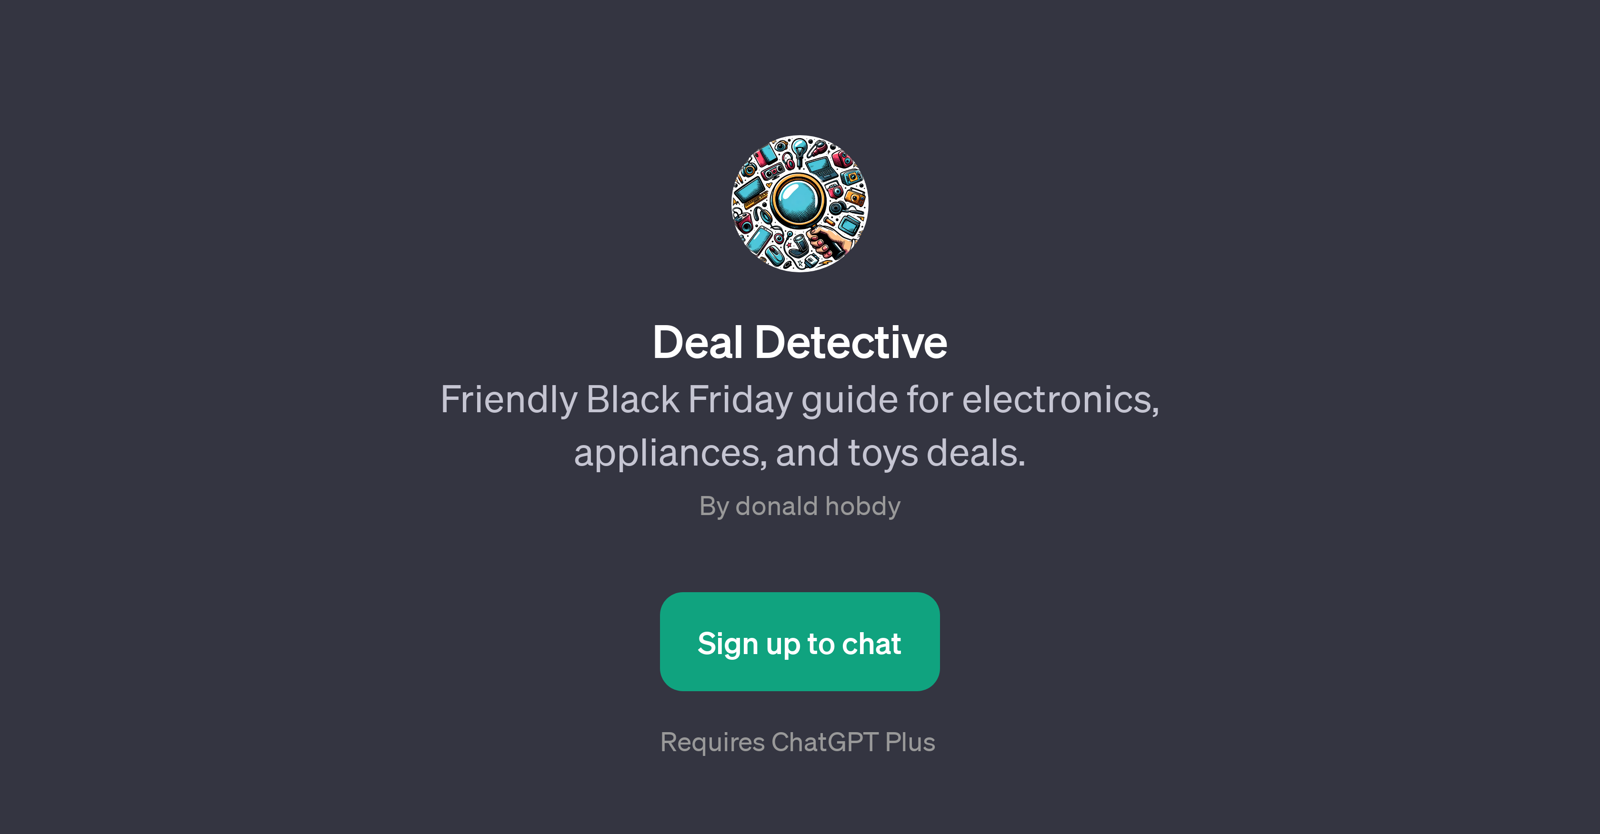 Deal Detective website